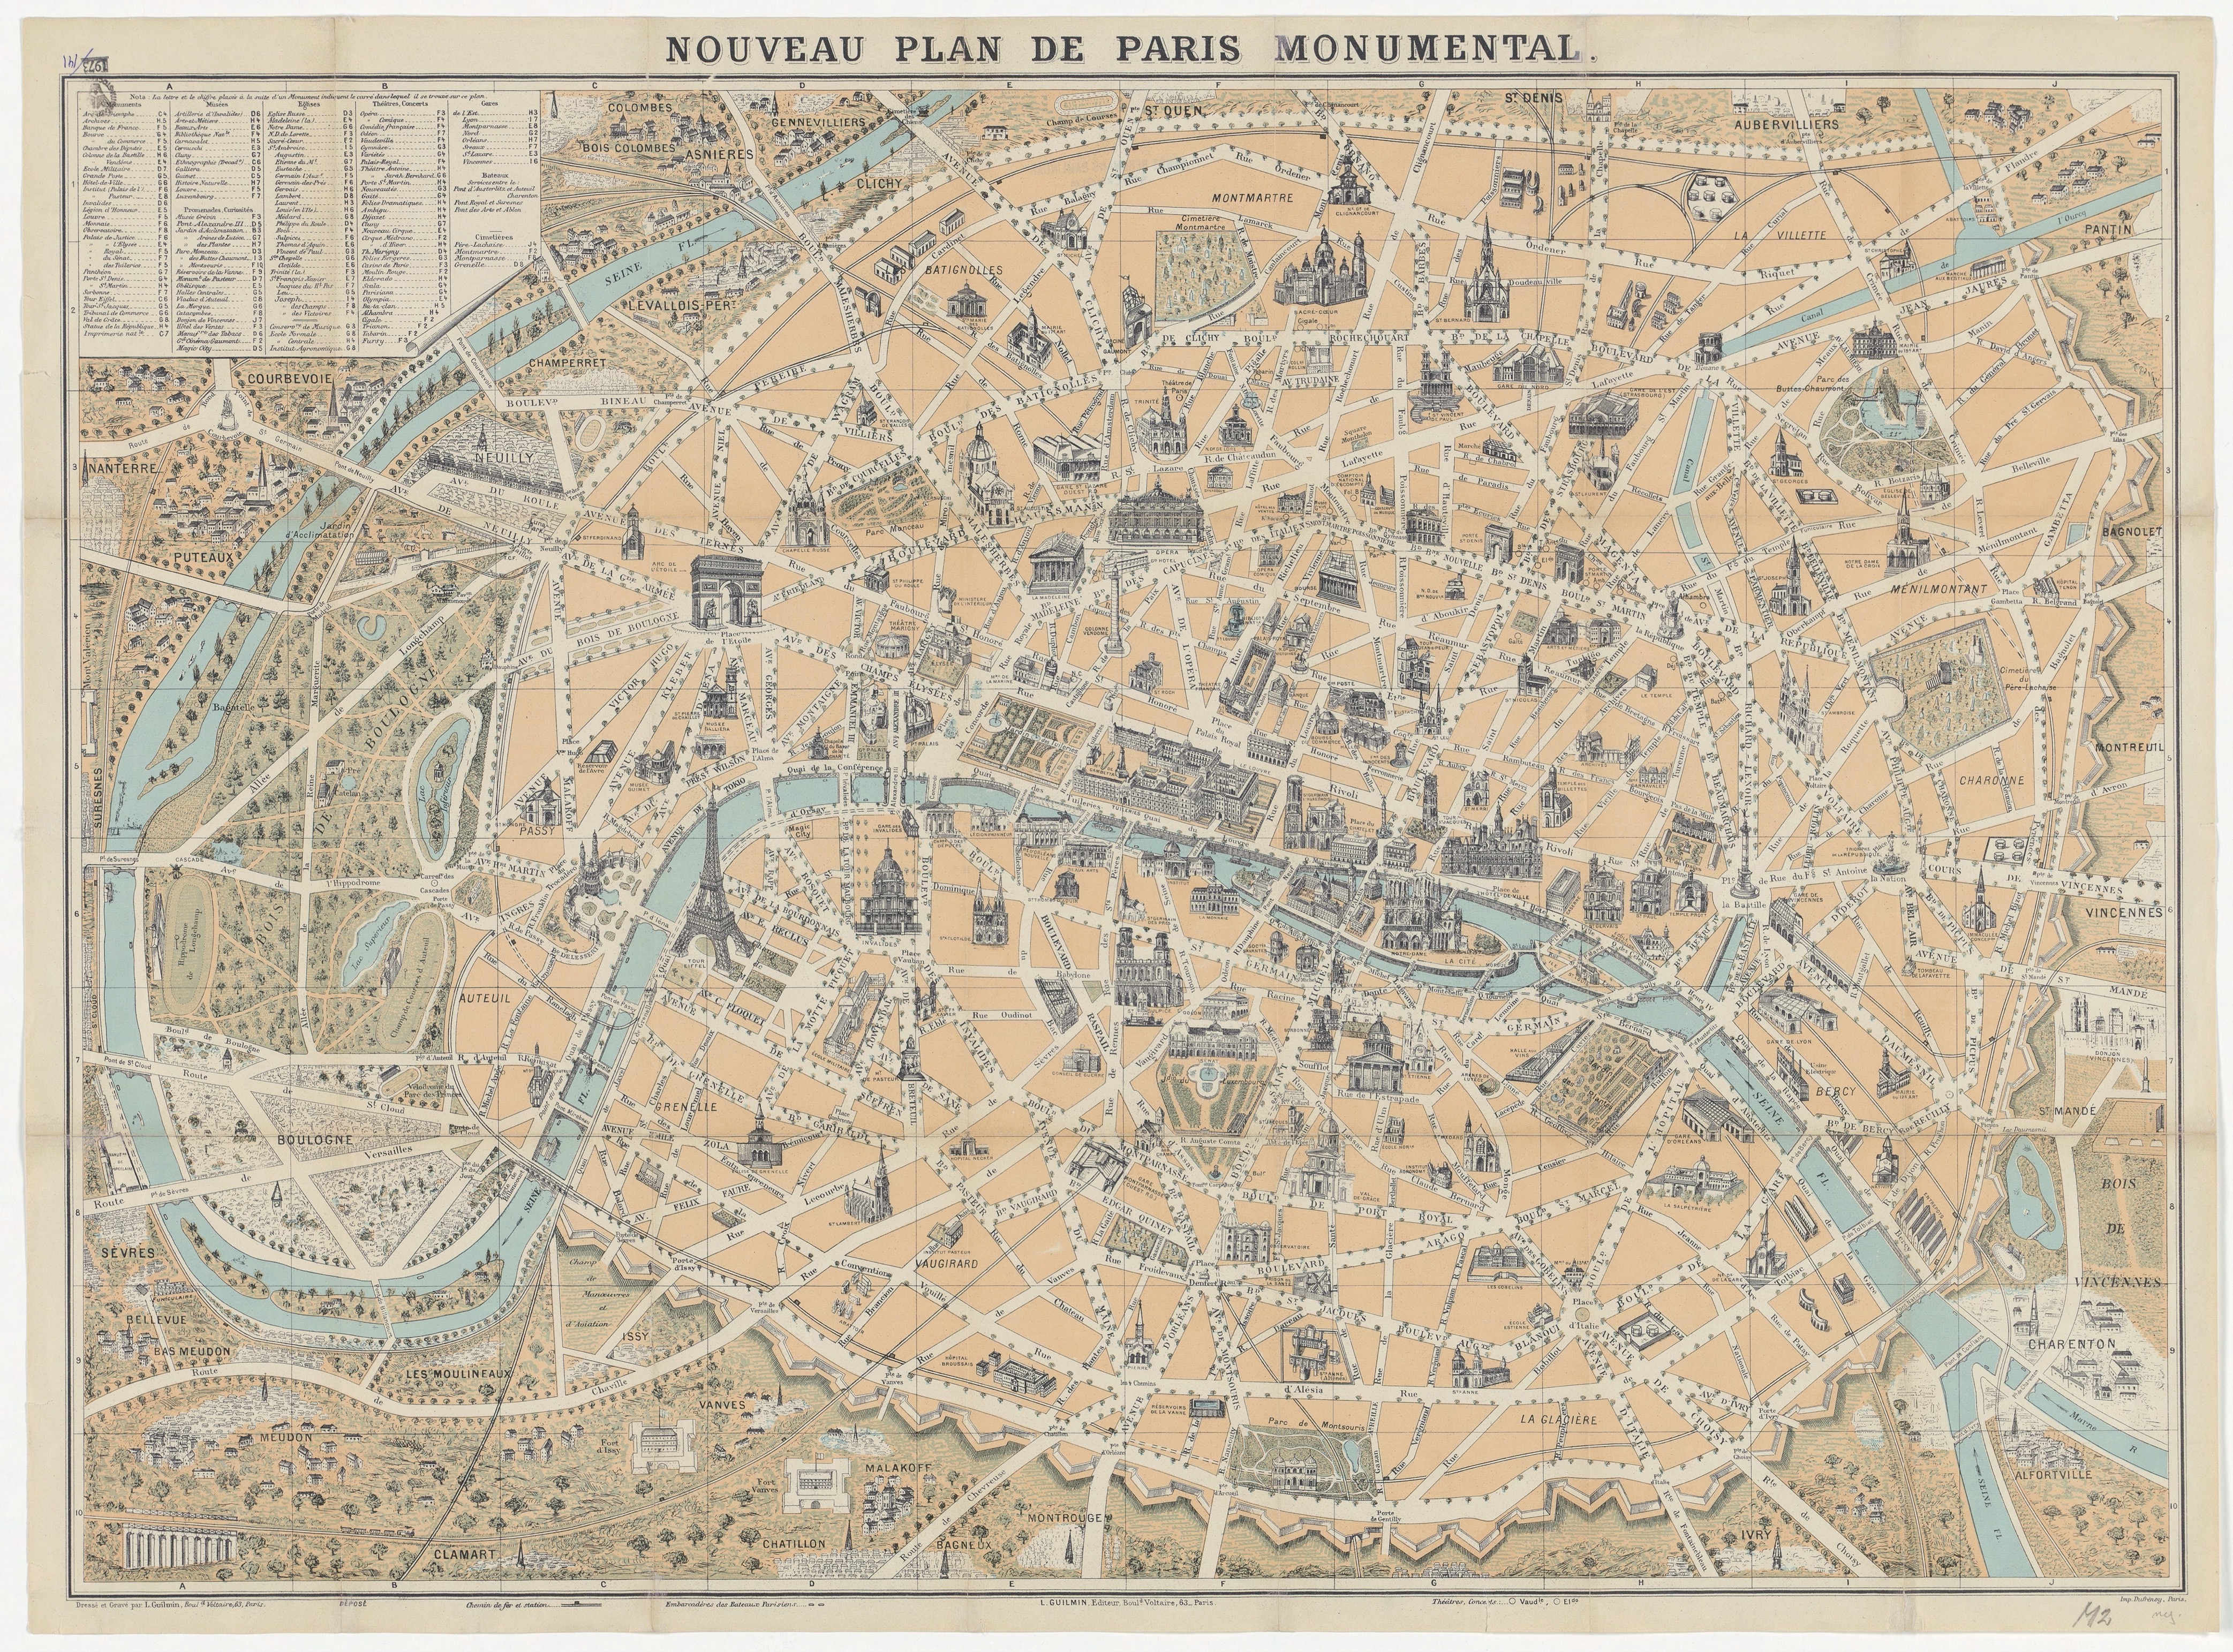 Nouveau plan de Paris monumental by L. Guilmin, 1899 - National Library of ...